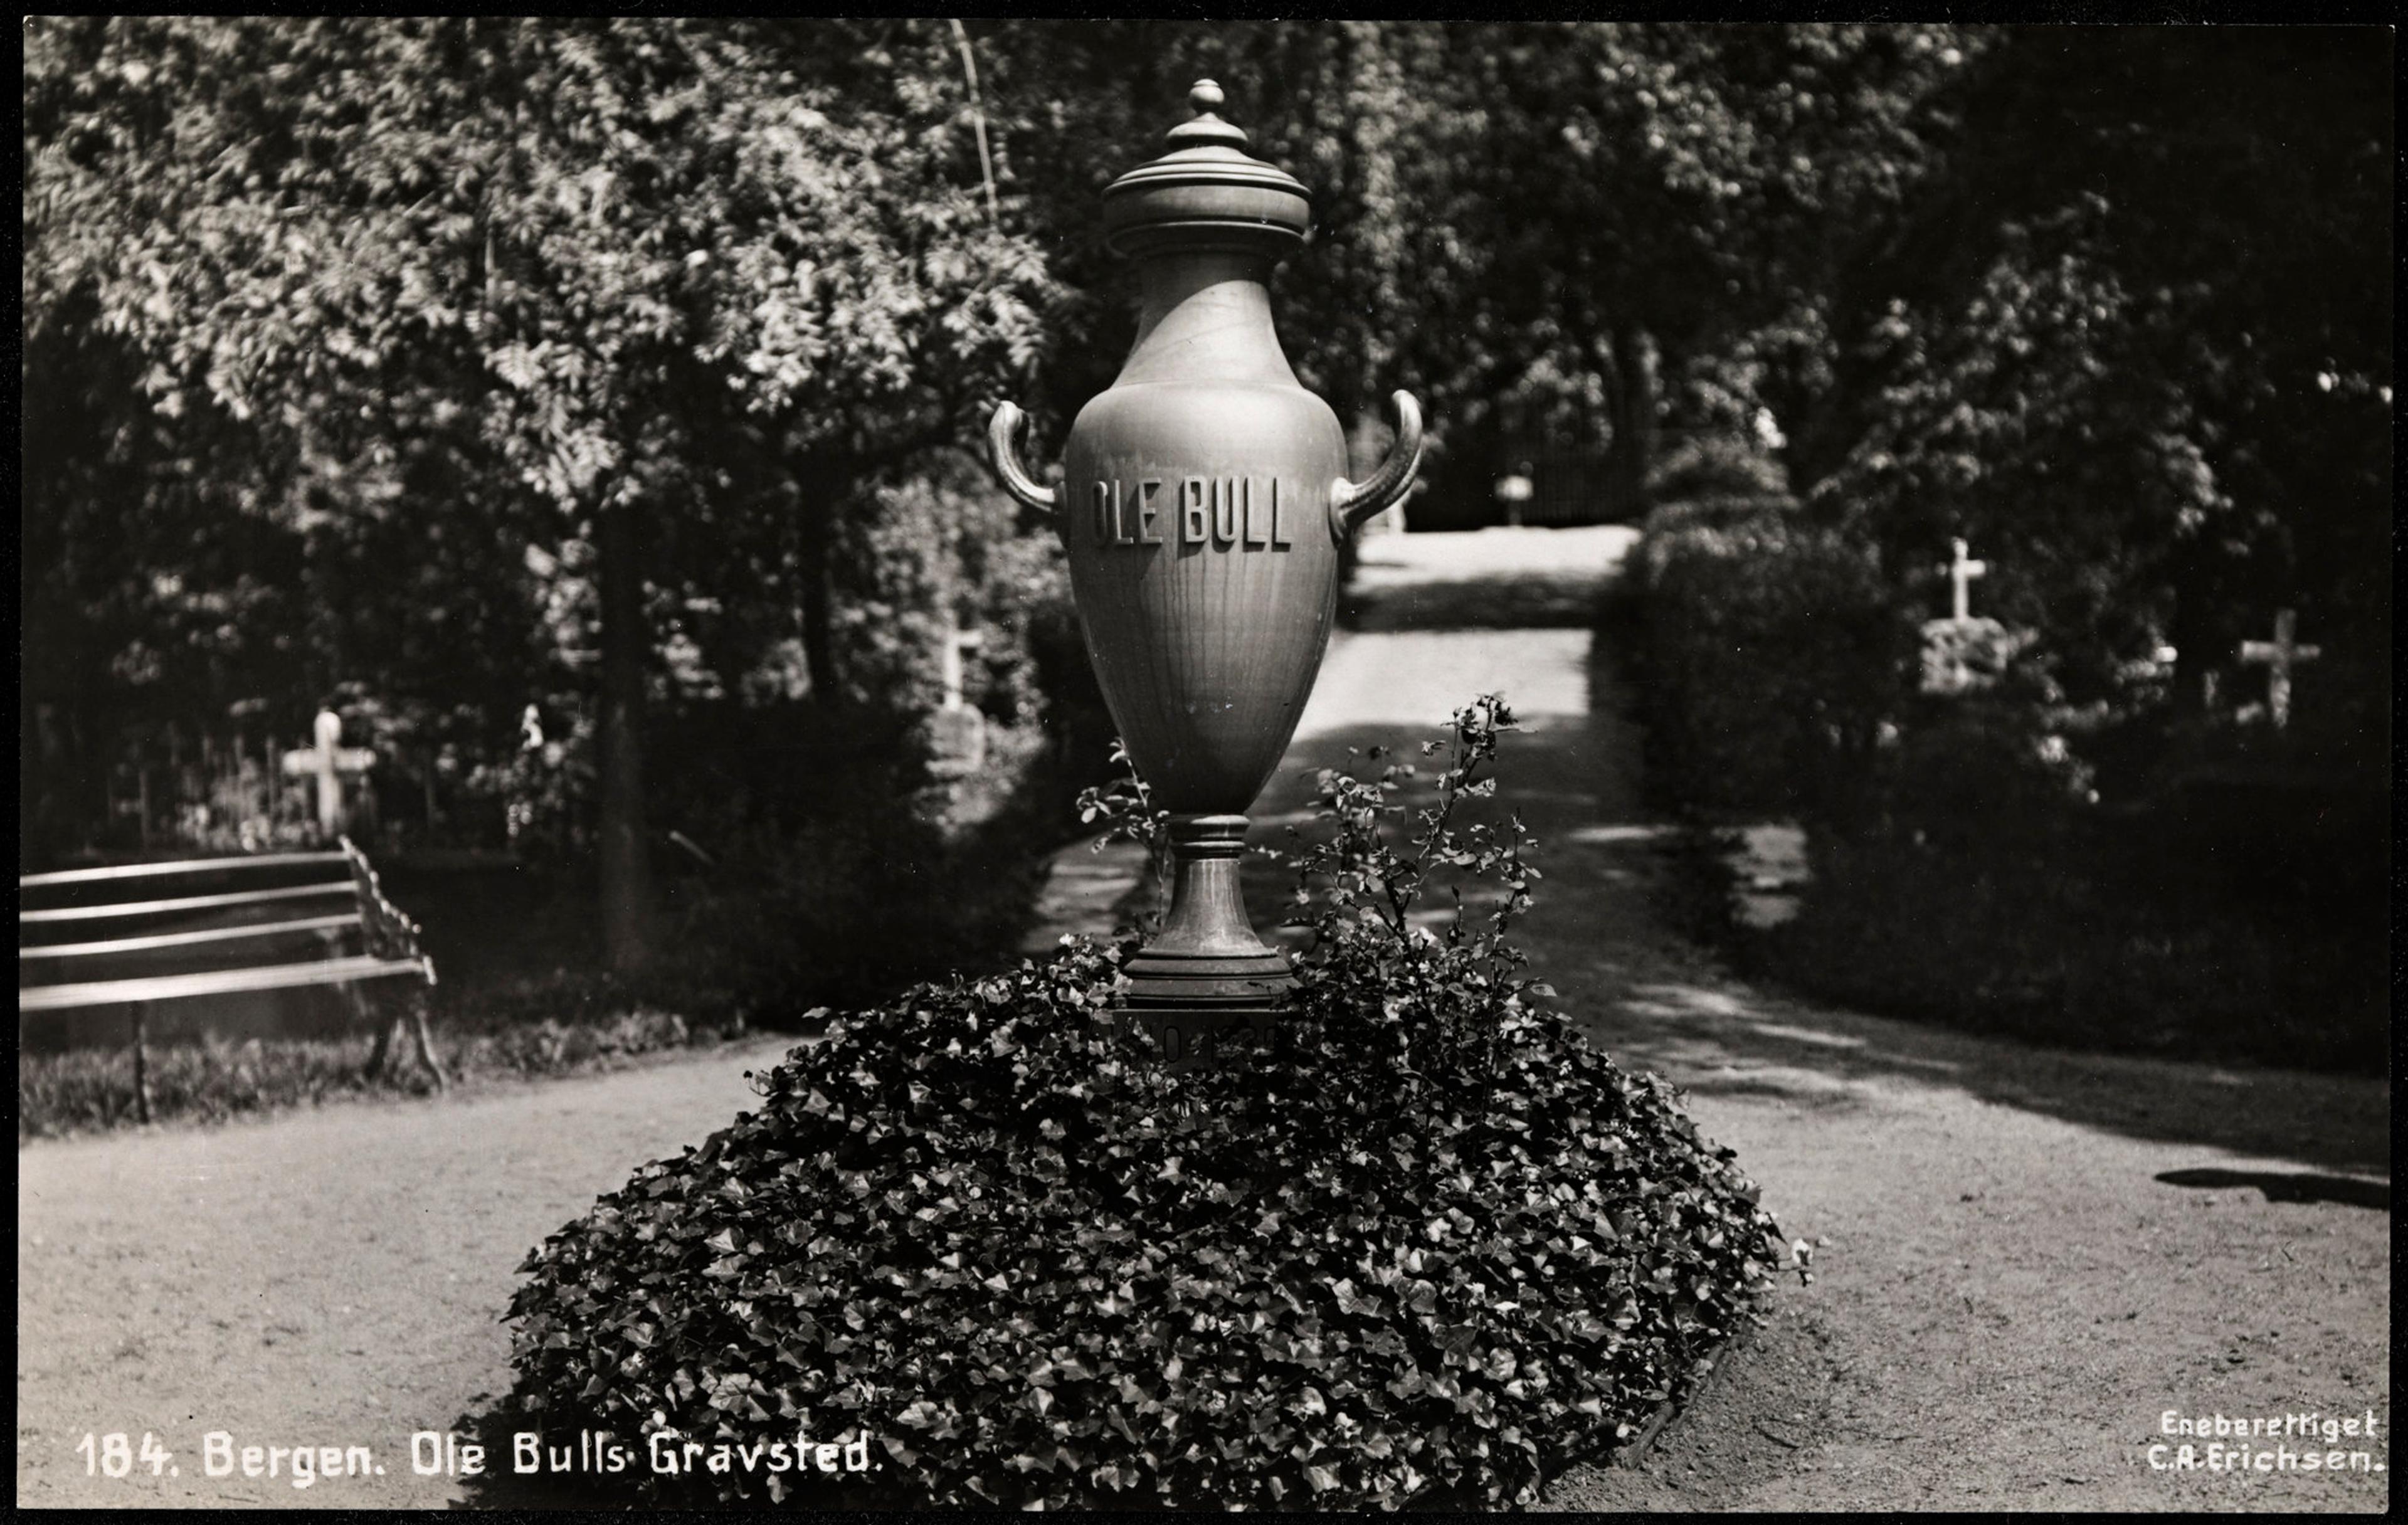 Fotografi som viser Ole Bulls gravsted i Bergen. Her står den store urnen hans med "Ole Bull" skrevet på. 